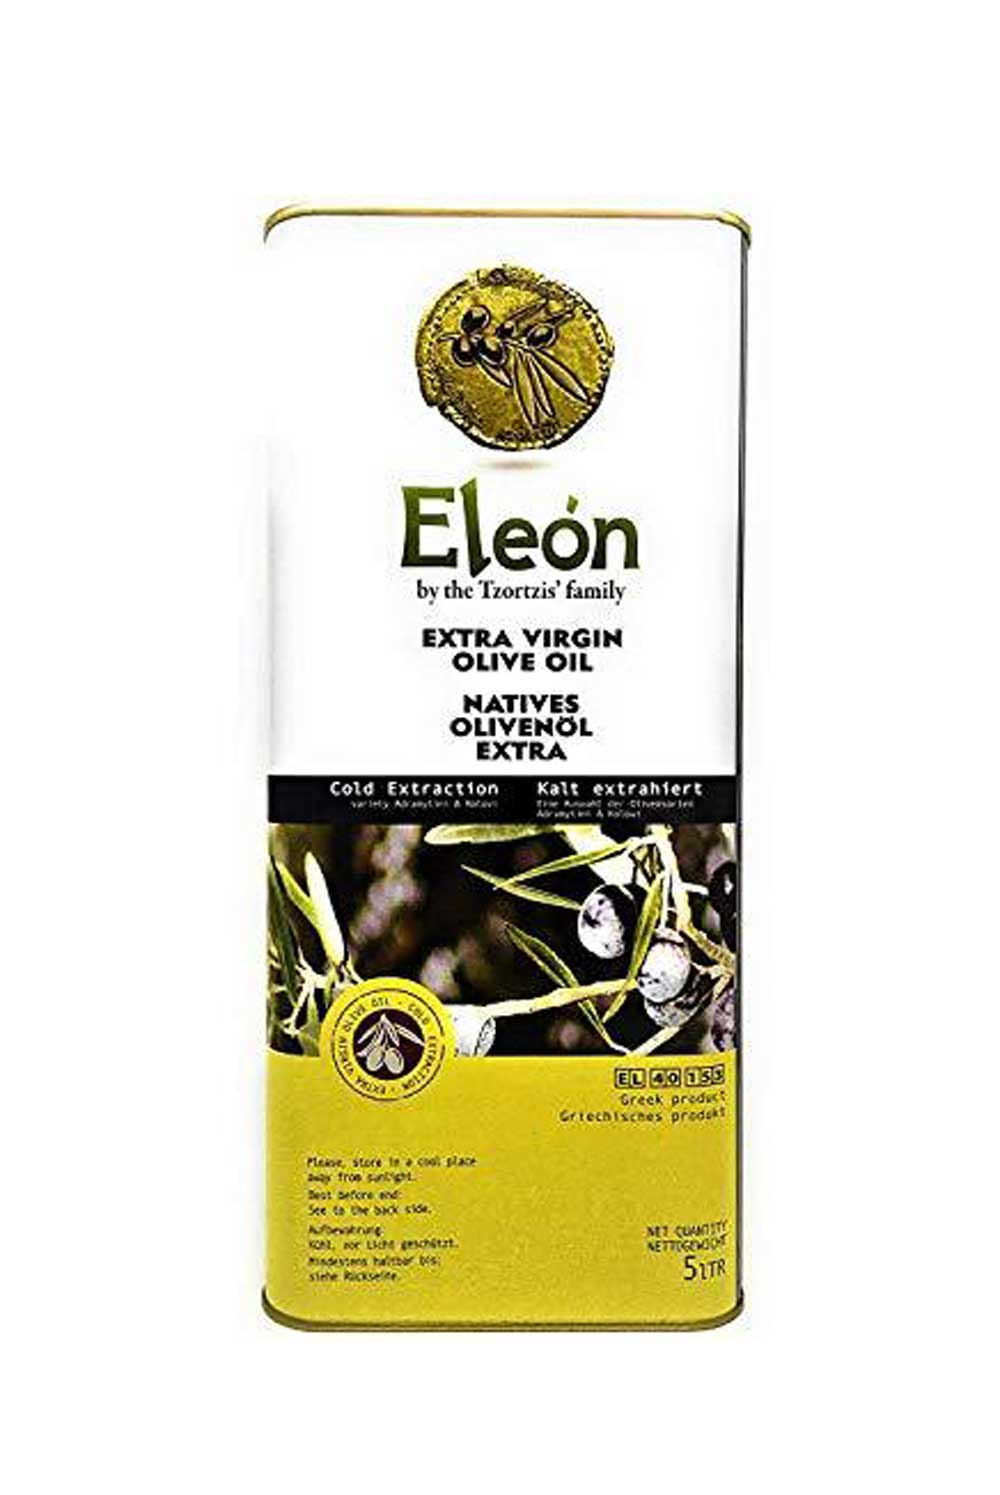 Eleon Extra Natives Olivenöl 5 lt.